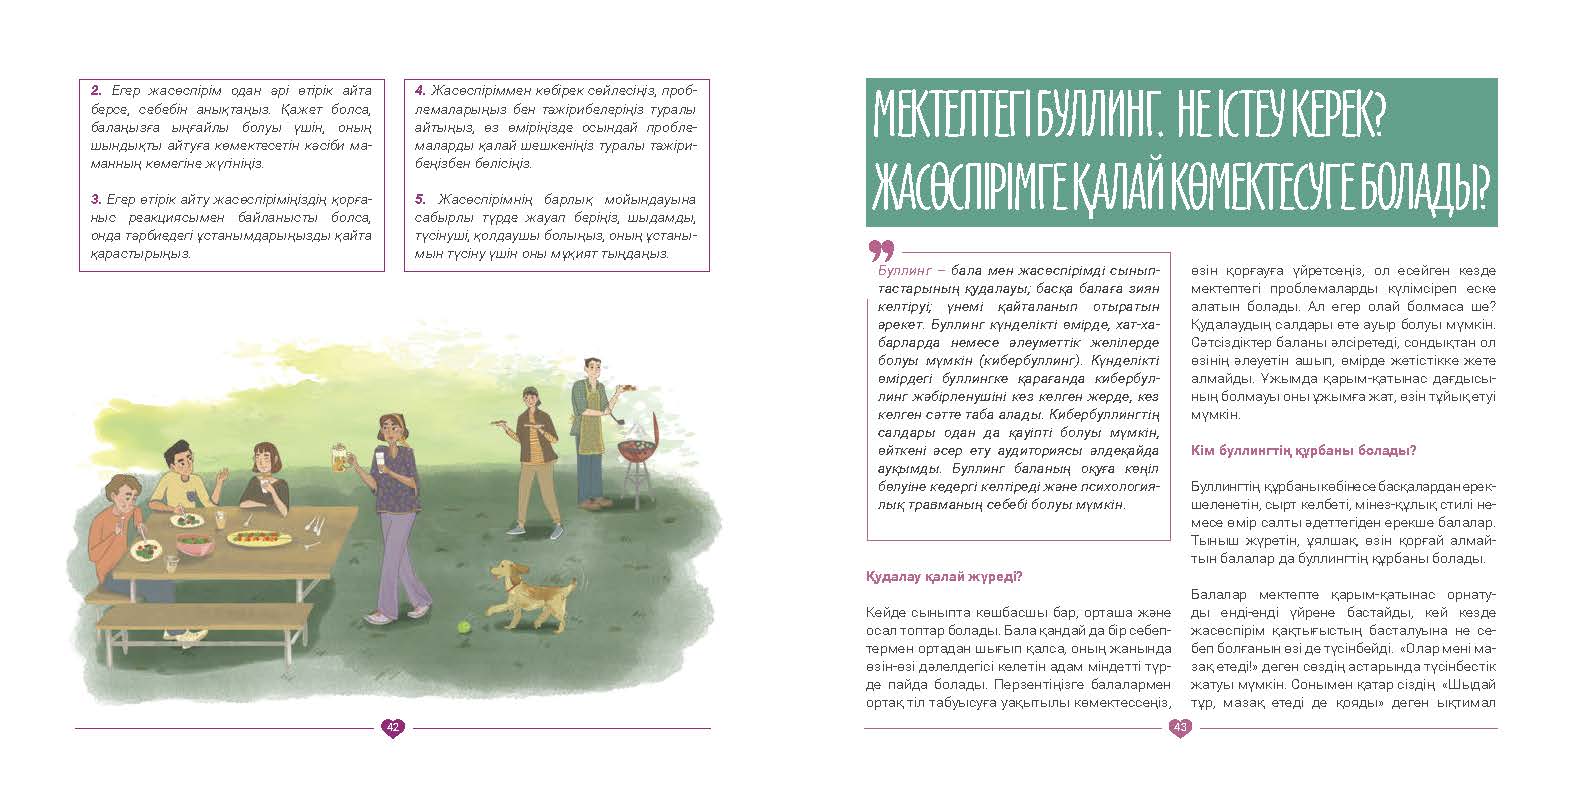 EVAC brochure KAZ (22).jpg